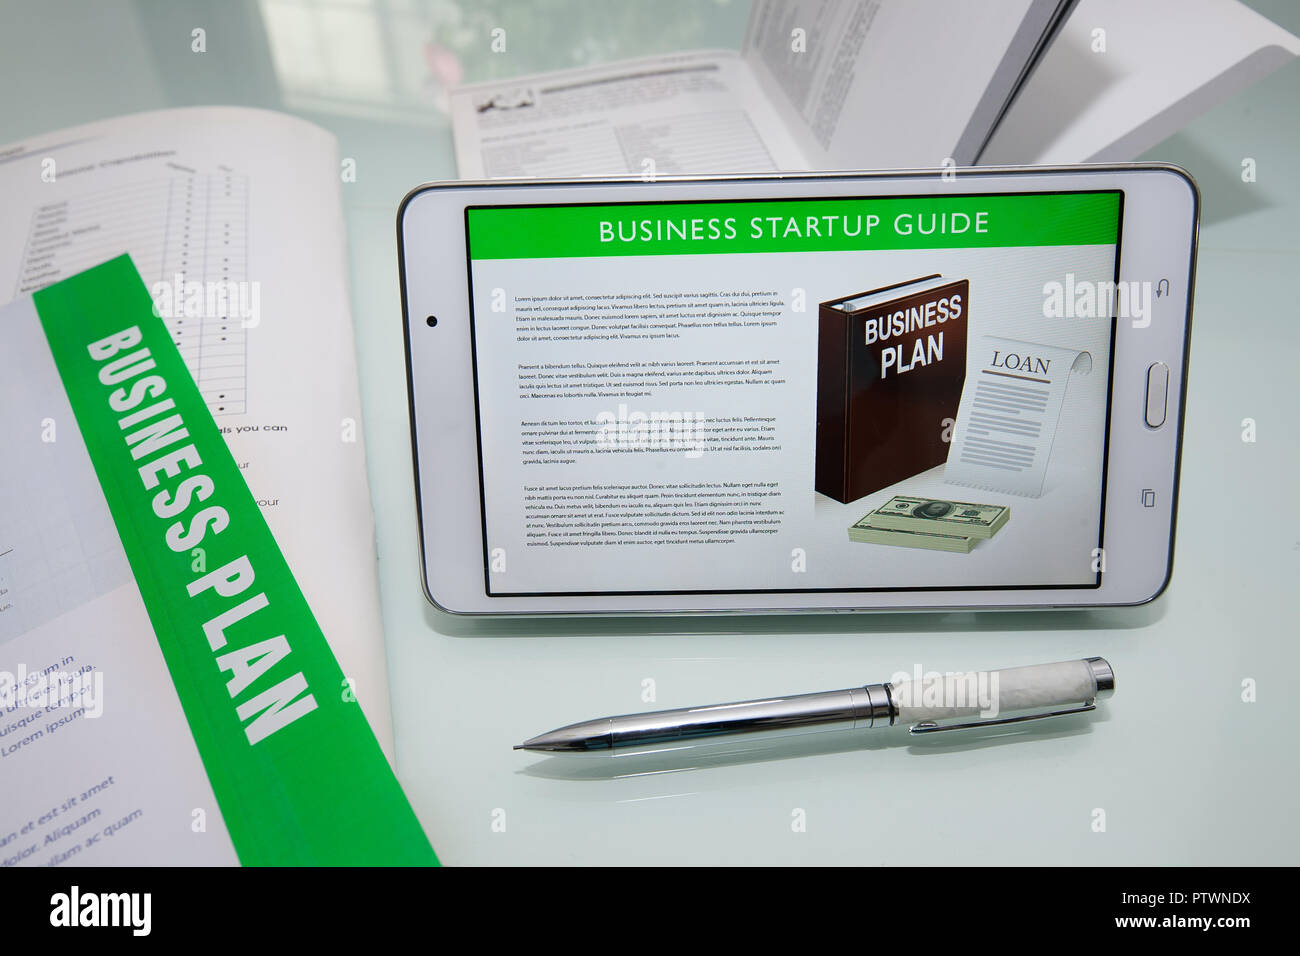 Guide de démarrage d'entreprises sur une tablette ou un téléphone mobile avec des documents plan d'affaires et de fantaisie stylo pour écrire. Banque D'Images